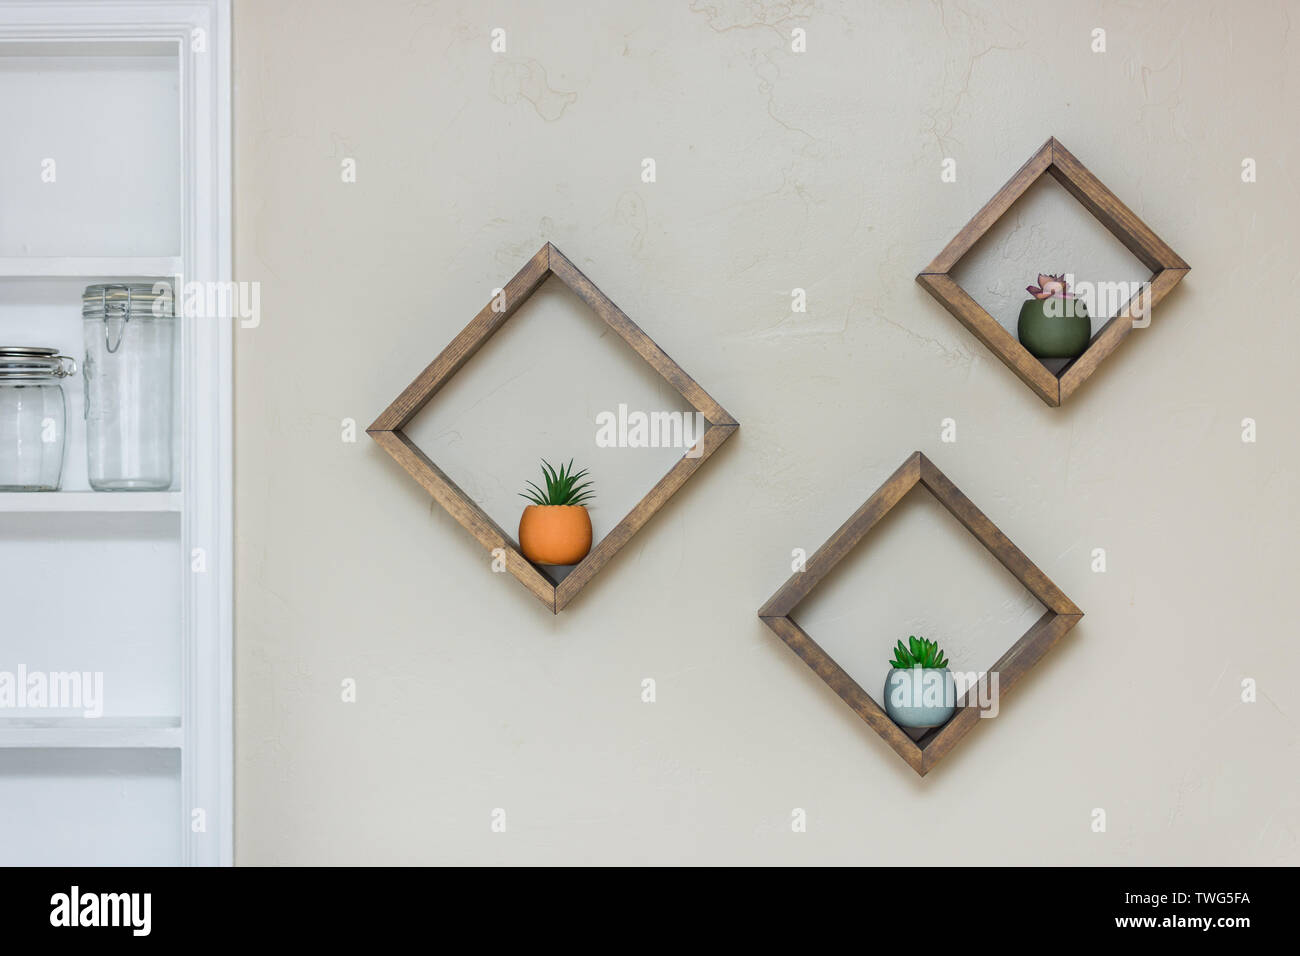 Rautenförmige Floating Regale an der Wand füllen mit Sukkulenten  Stockfotografie - Alamy